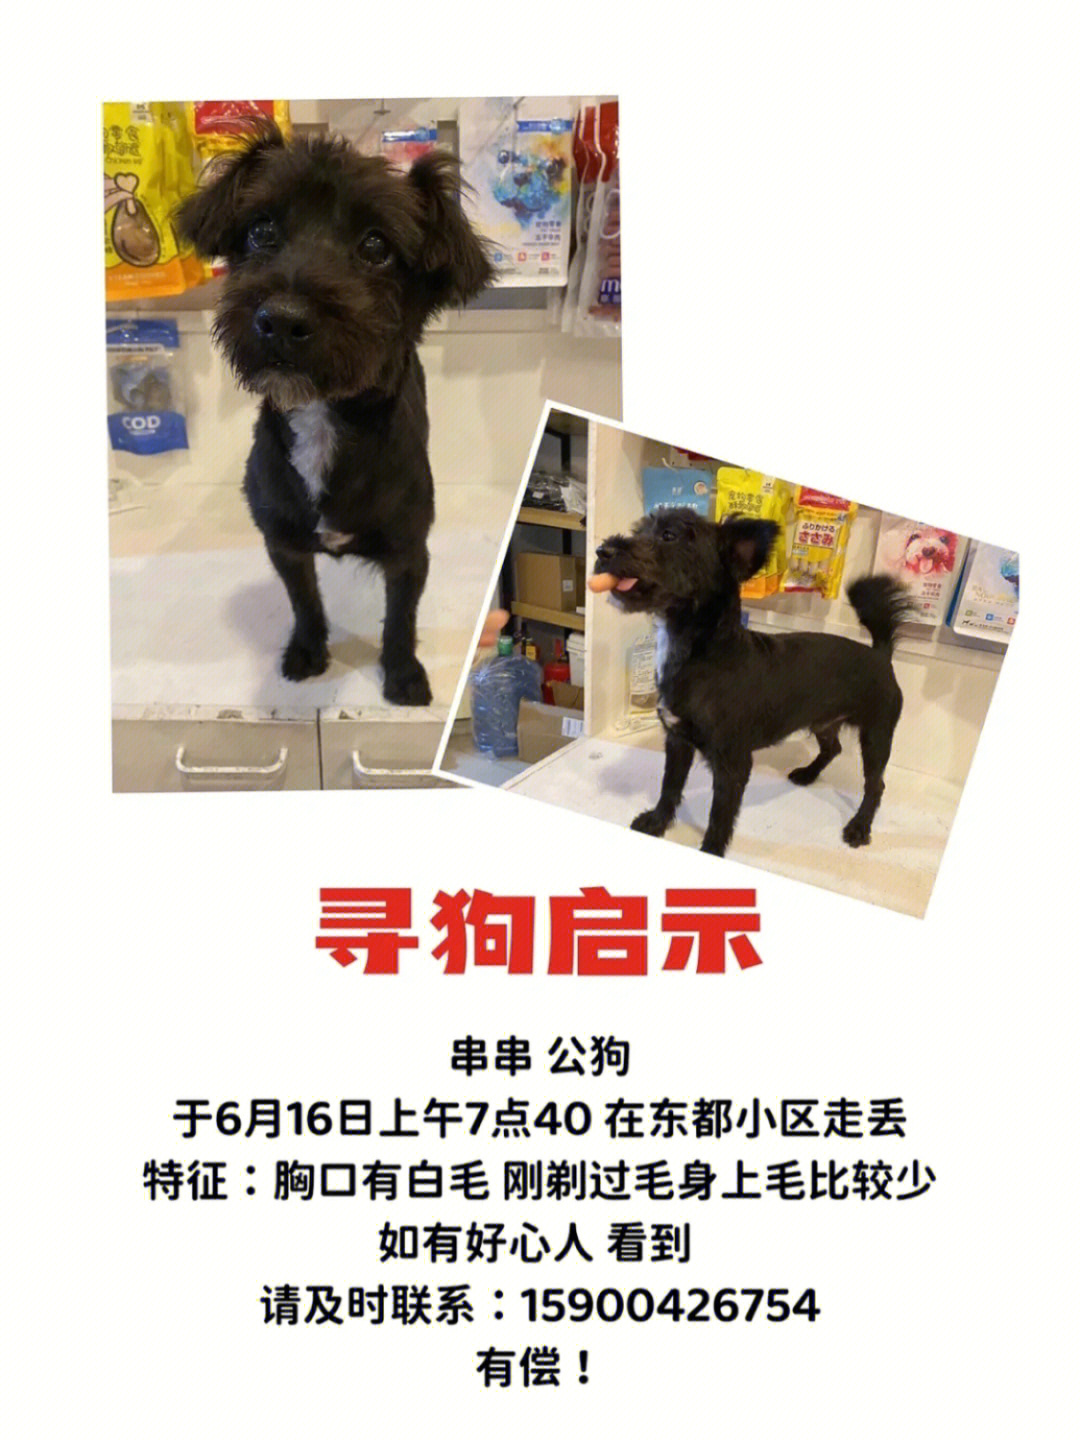 上海寻狗已找到